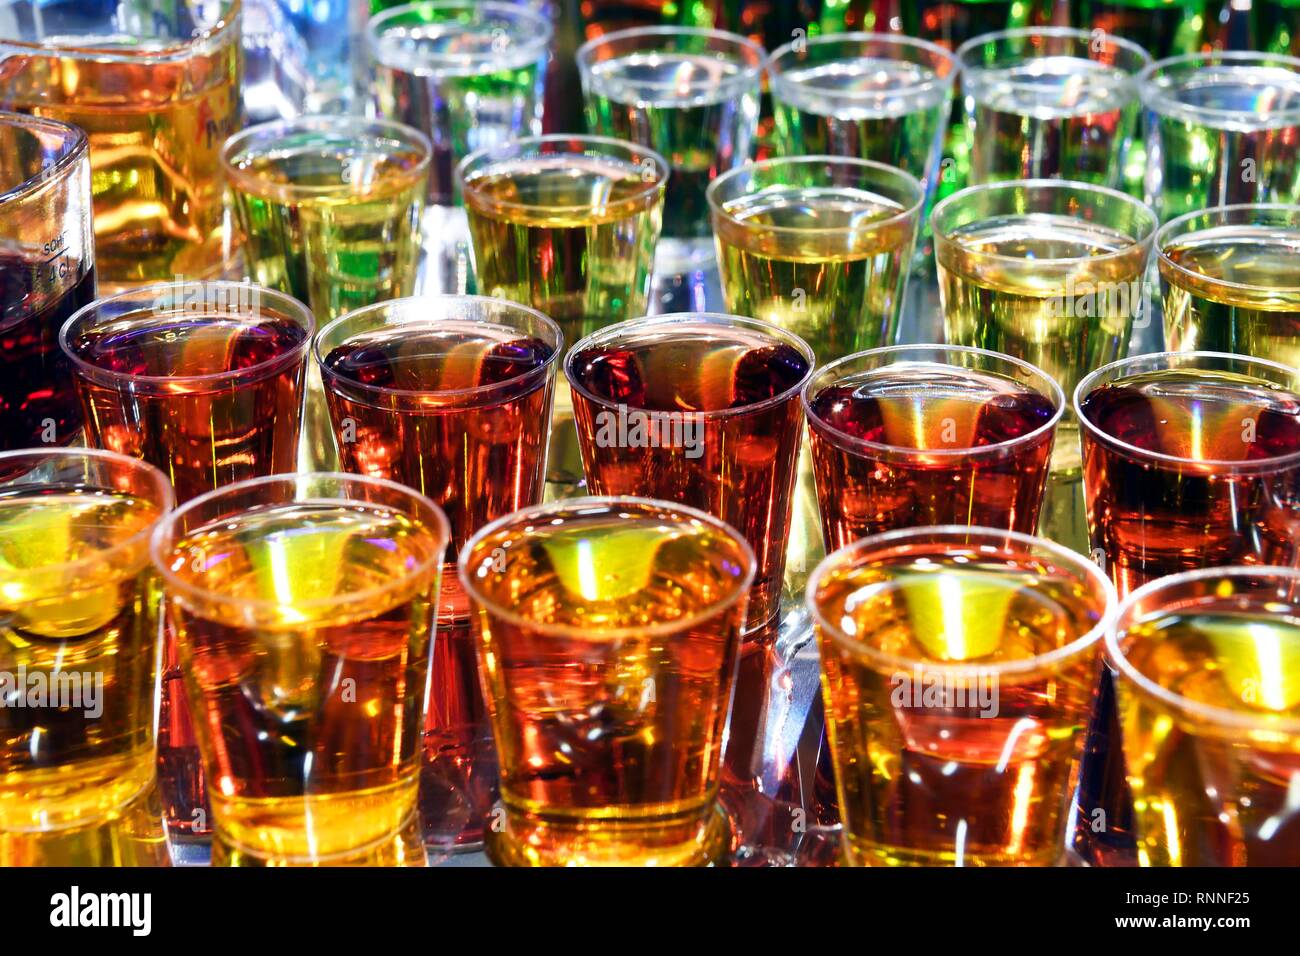 Various varieties of colorful vodka, wallpaper, Berlin, Germany Stock Photo